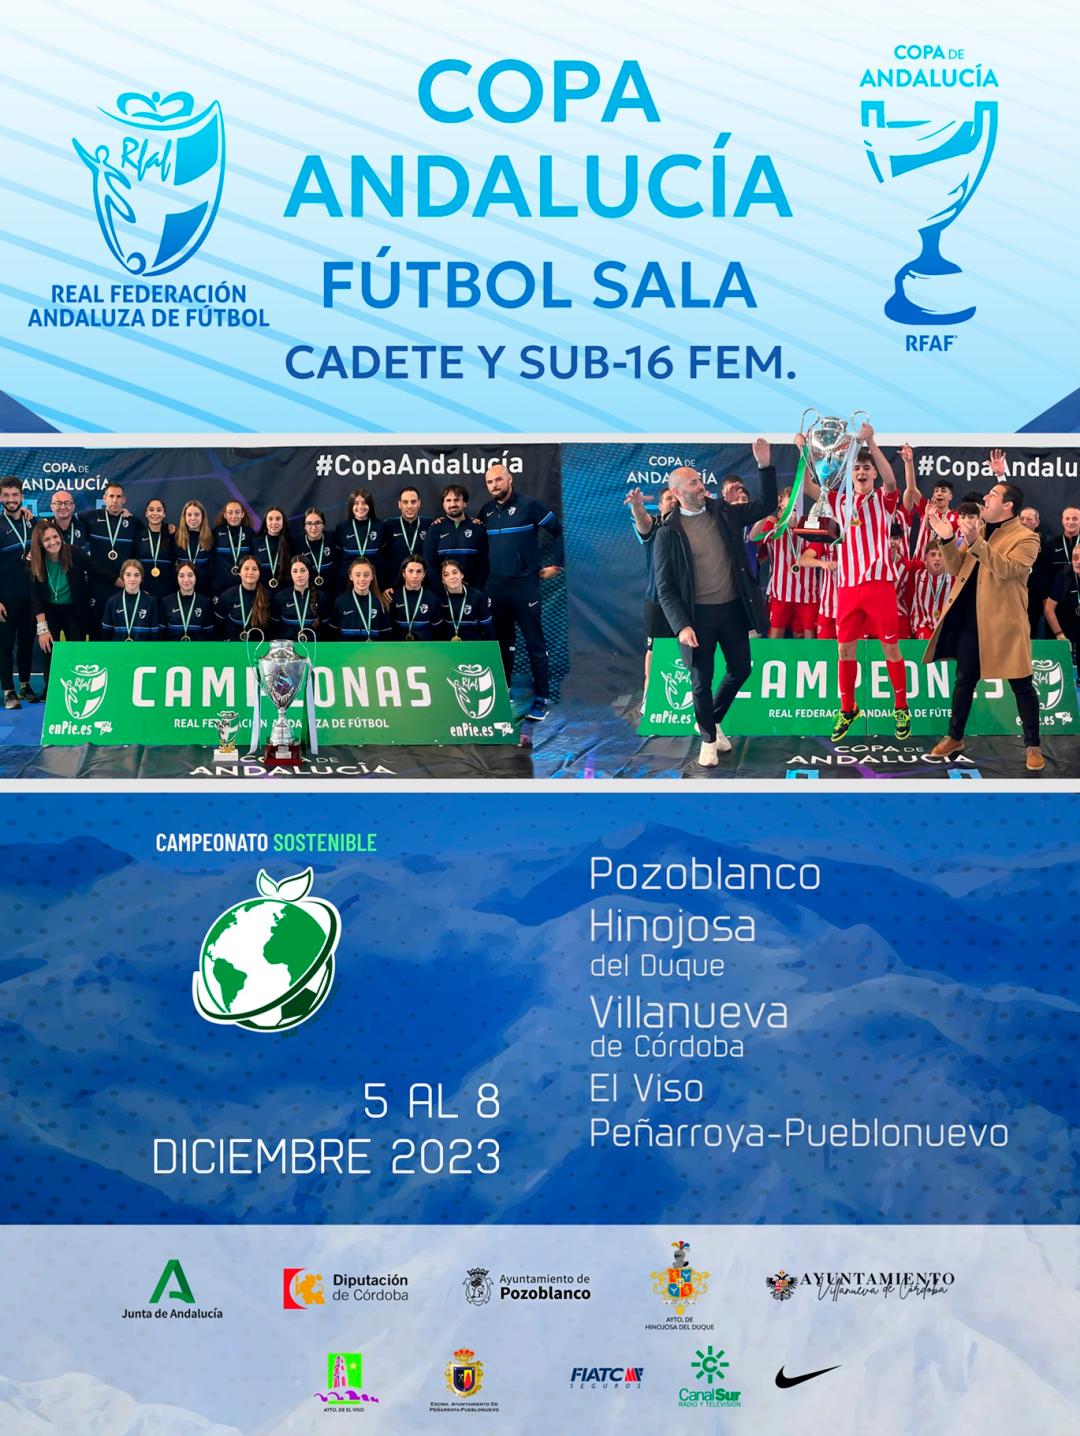 Campeonato selecciones provinciales andalucía fútbol 2023